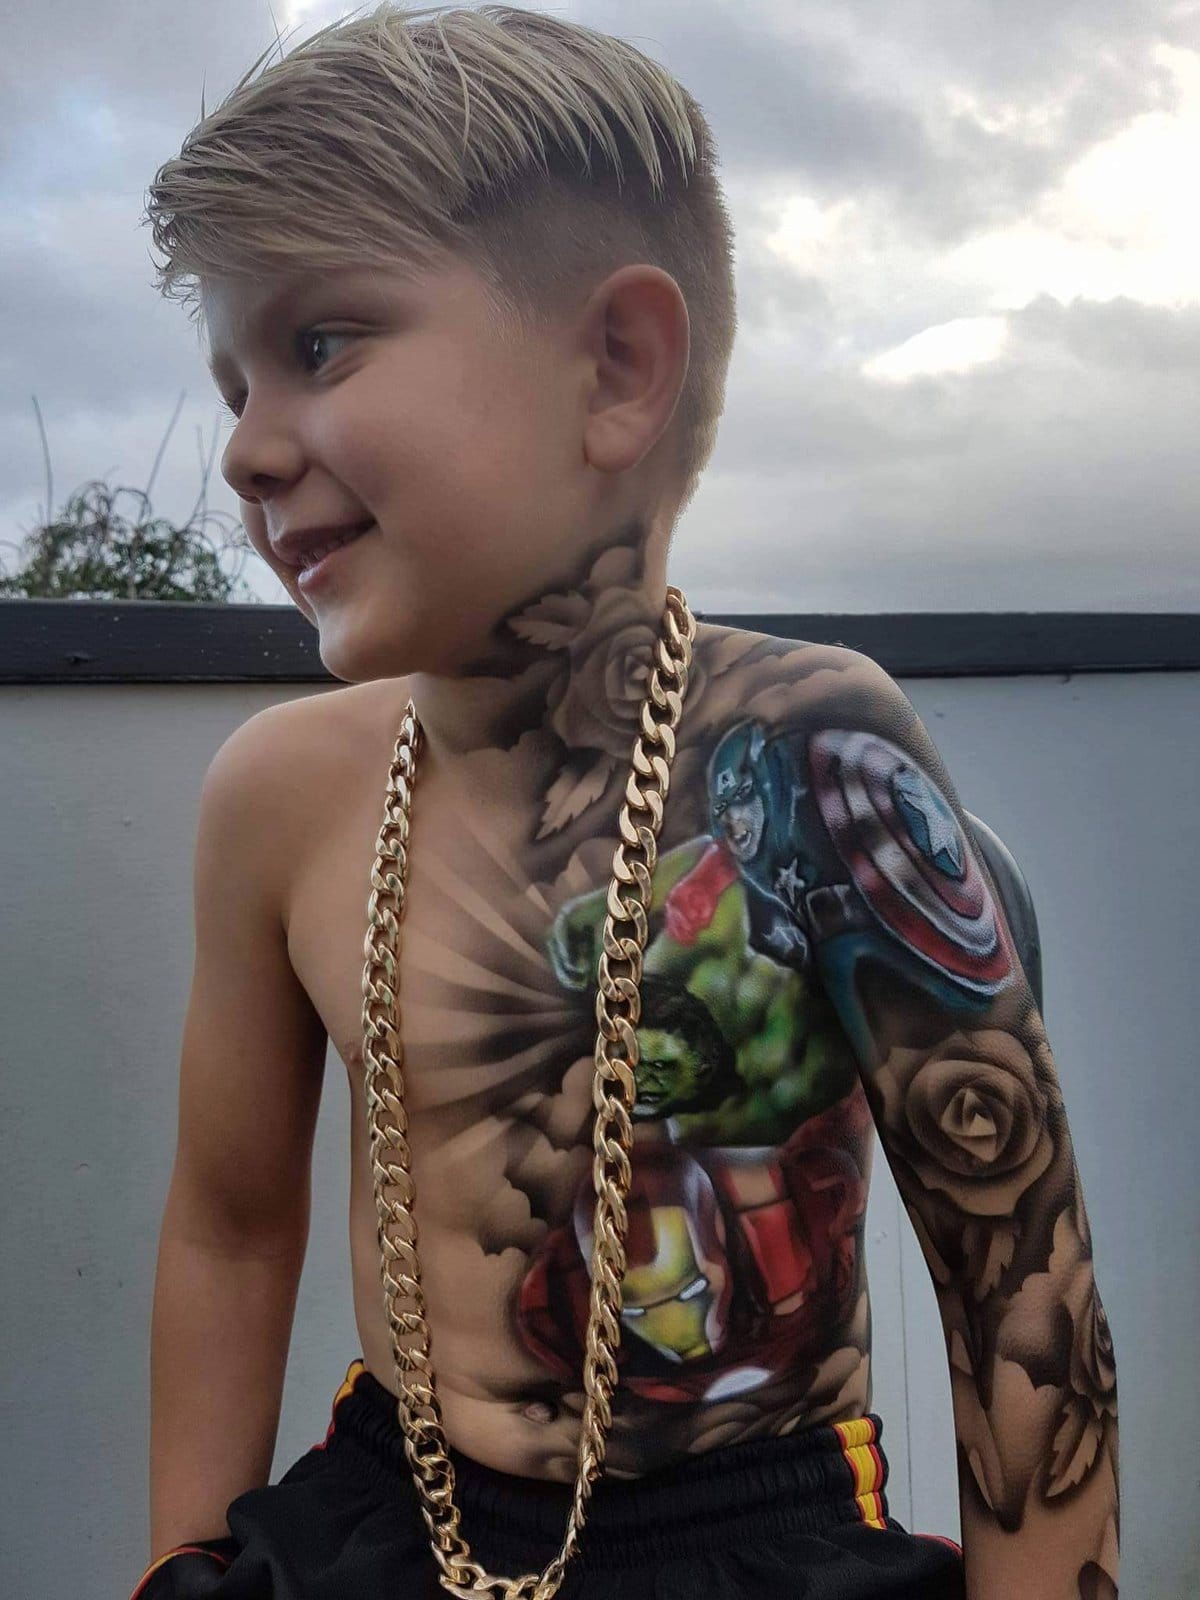 Художник рисует детям реалистичные татуировки, которые делают их круче и счастливее, а взрослым взрывают мозг 35